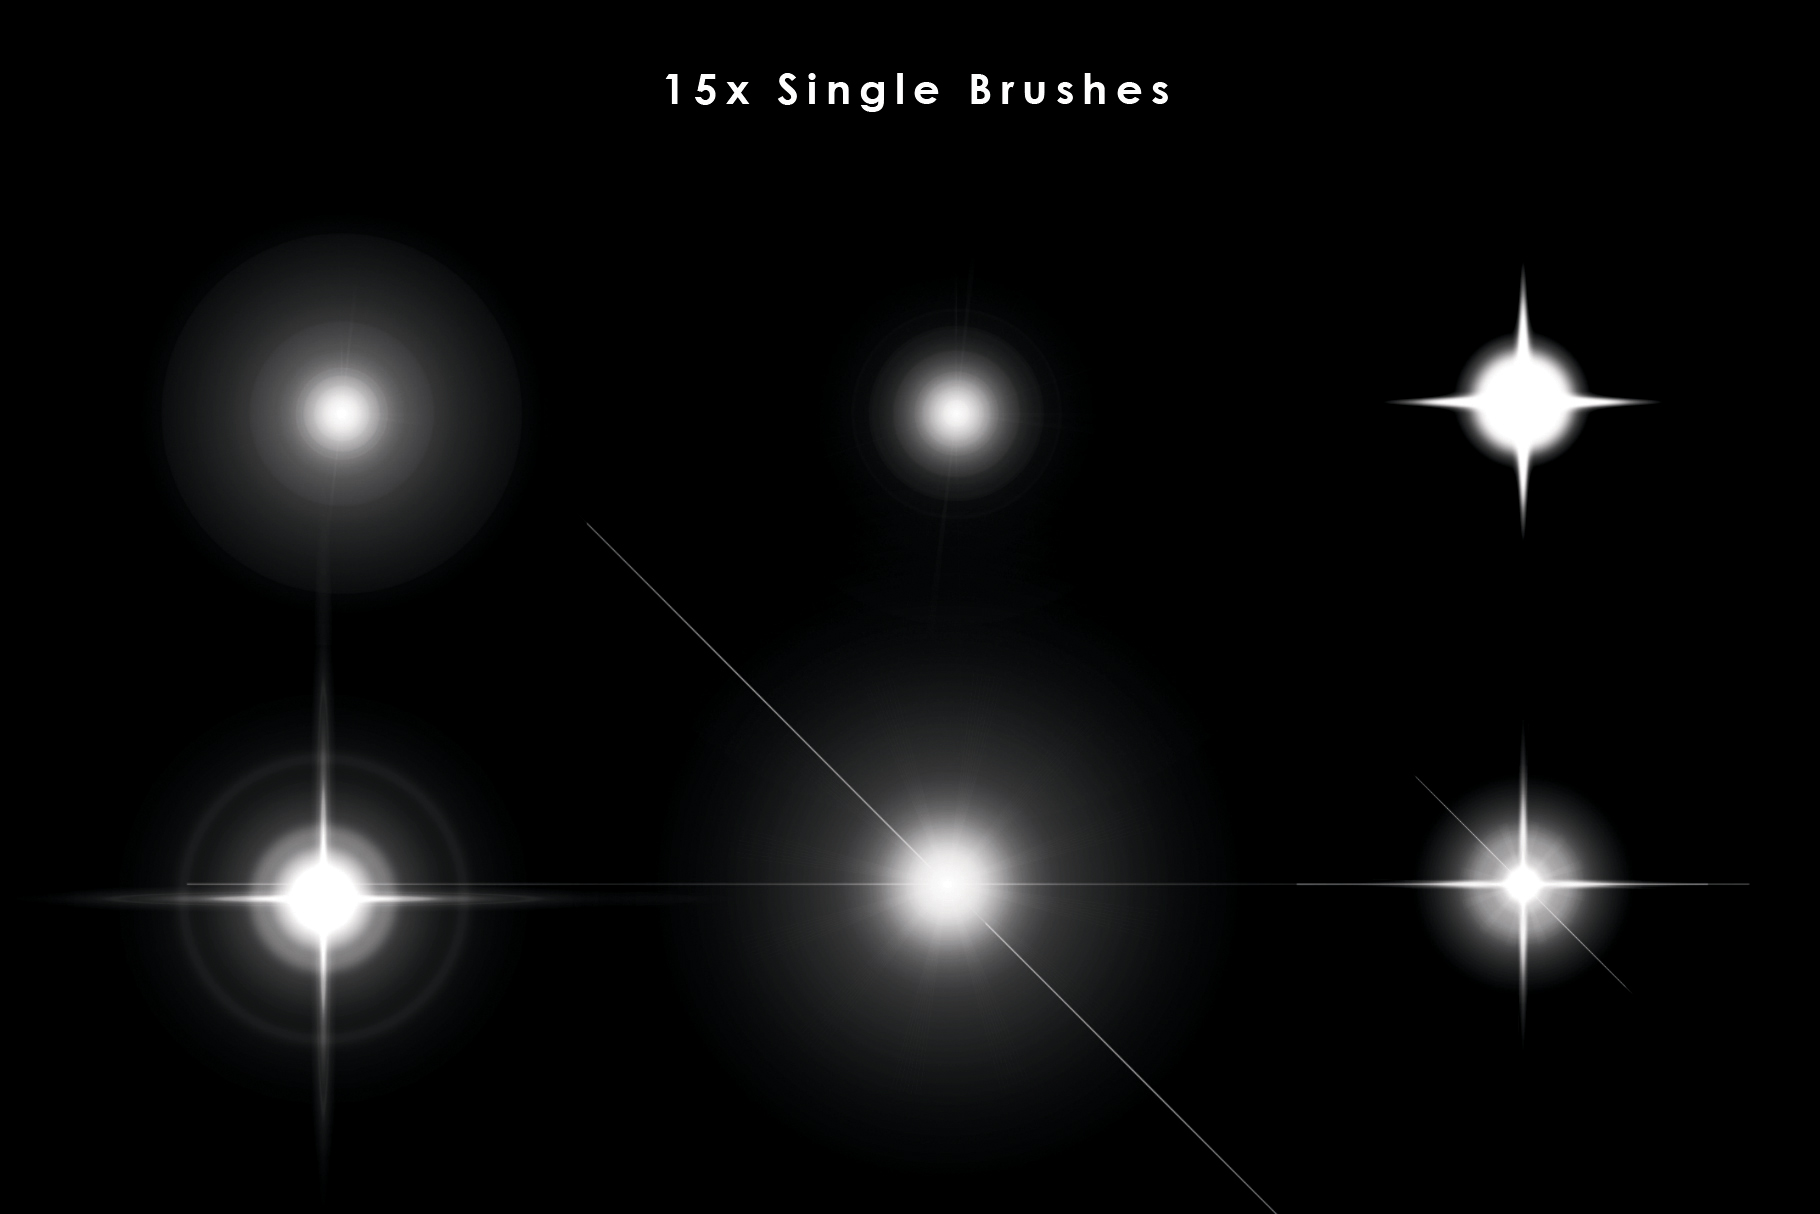 15x single brushes image